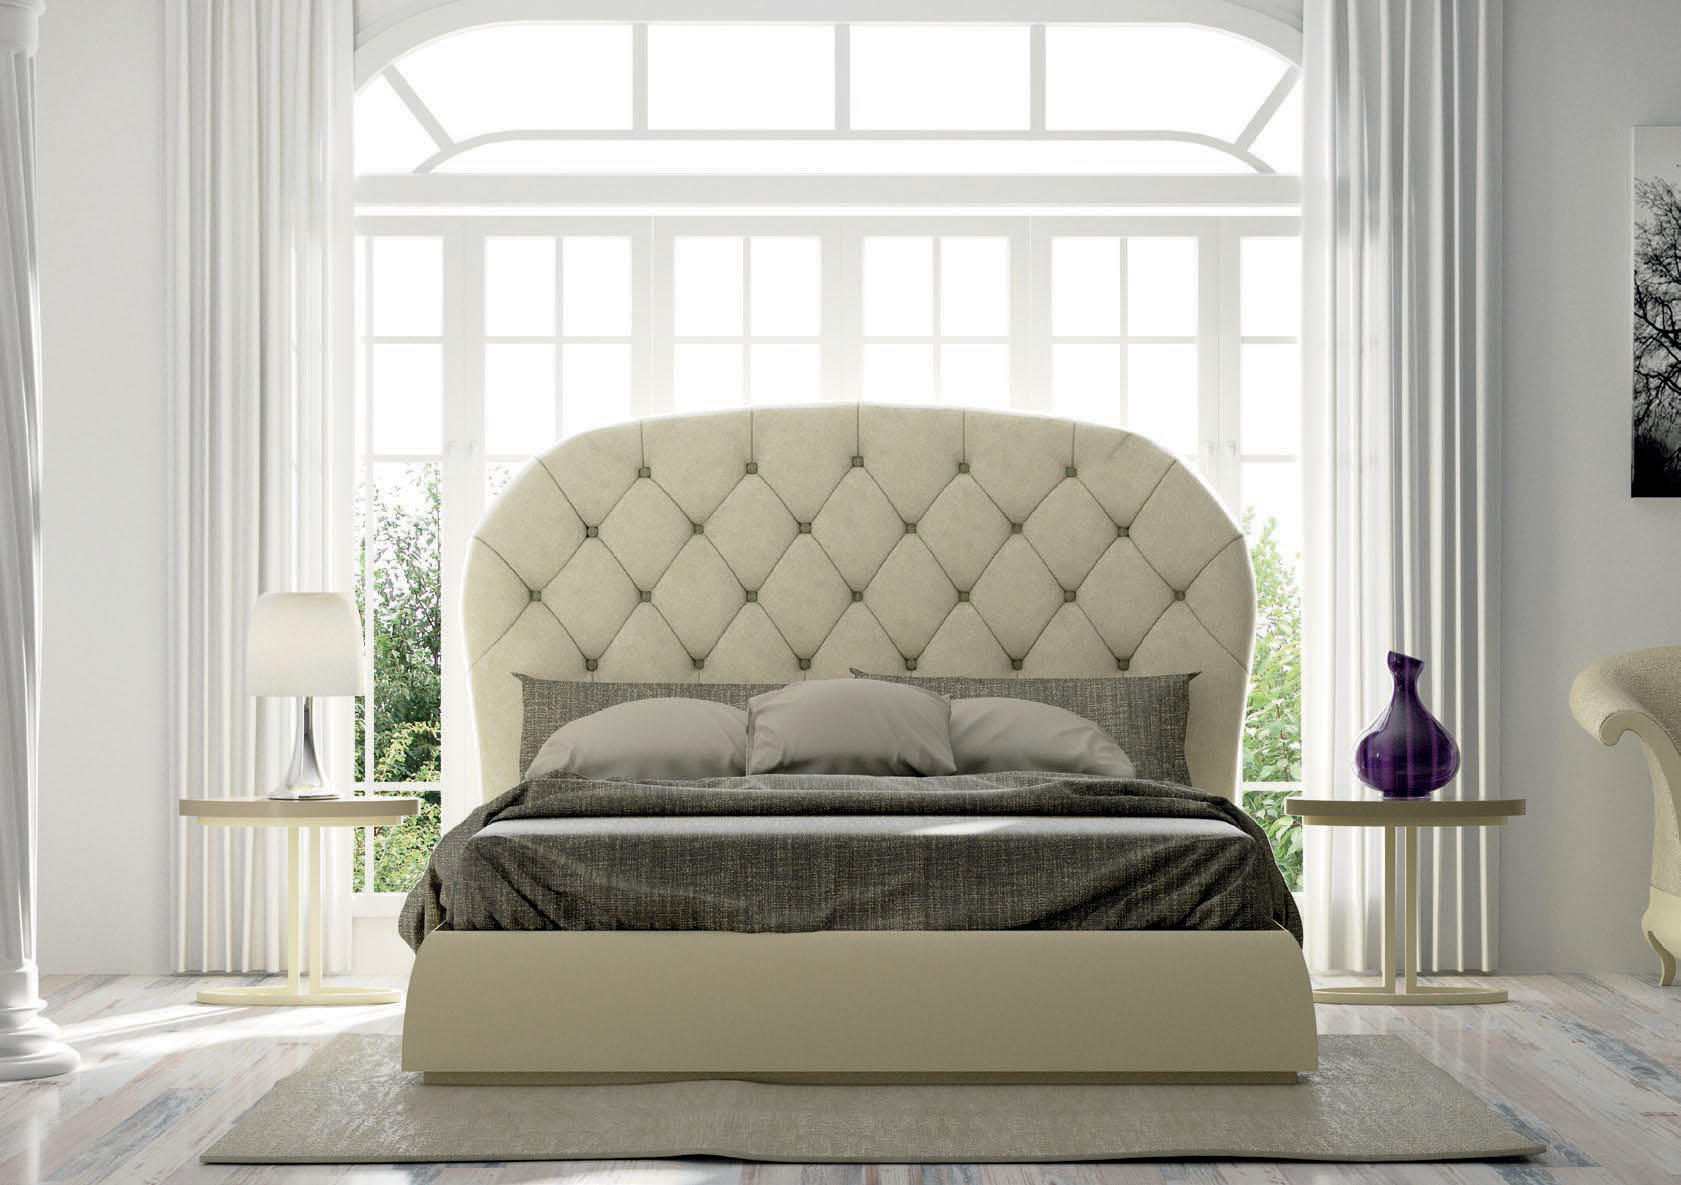 Brands Franco Furniture Avanty Bedrooms, Spain DOR 150